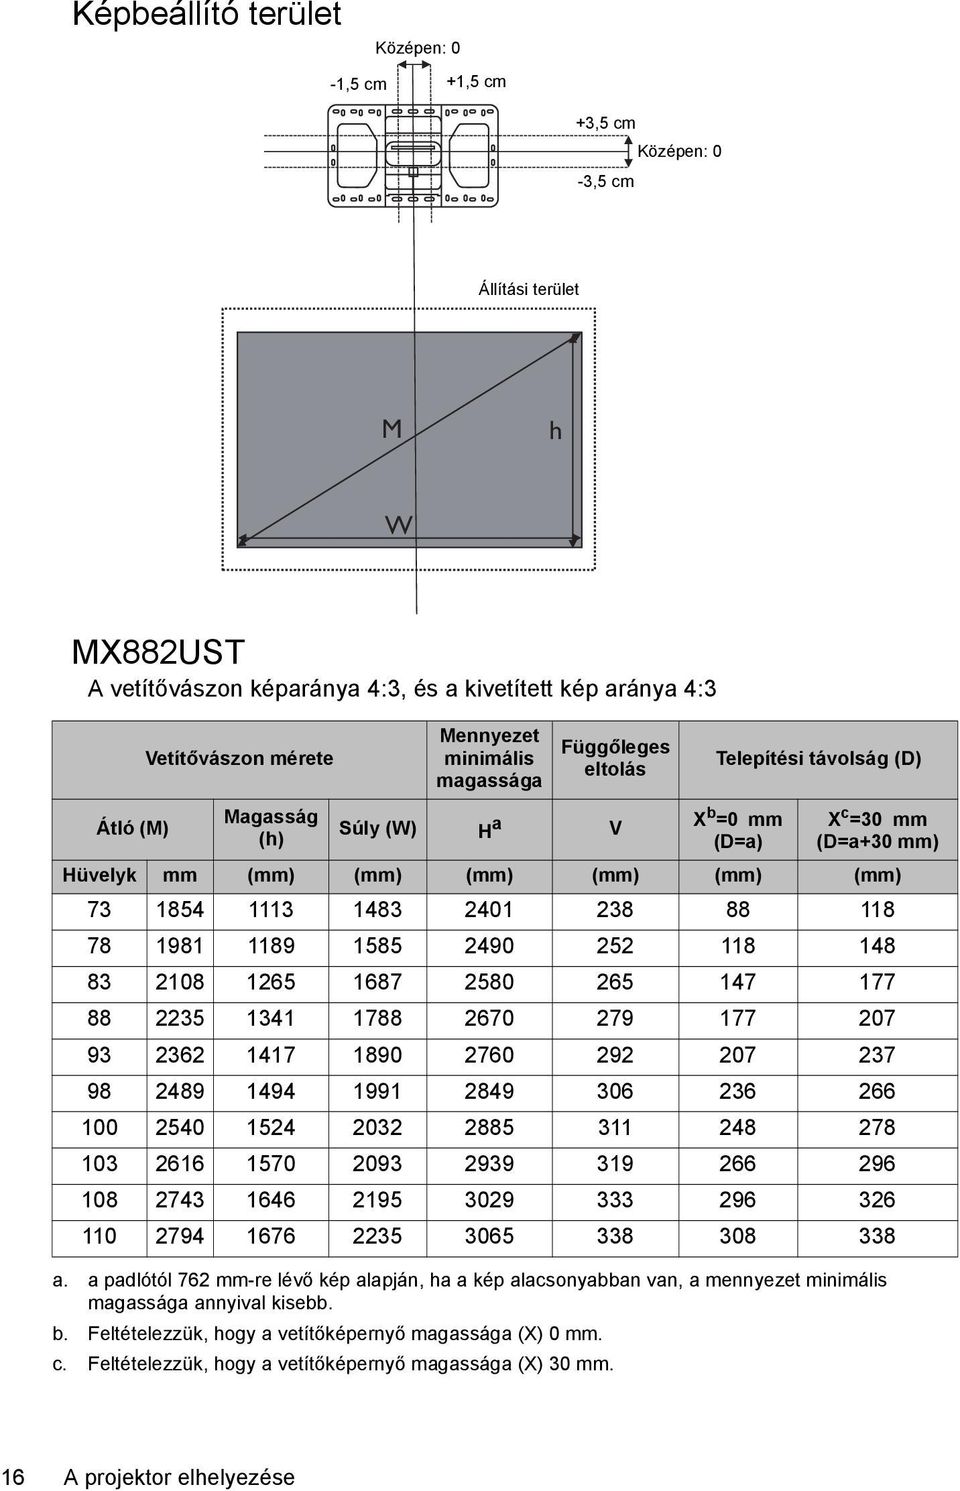 a padlótól 762 mm-re lévő kép alapján, ha a kép alacsonyabban van, a mennyezet minimális magassága annyival kisebb. b. Feltételezzük, hogy a vetítőképernyő magassága (X) 0 mm. c.